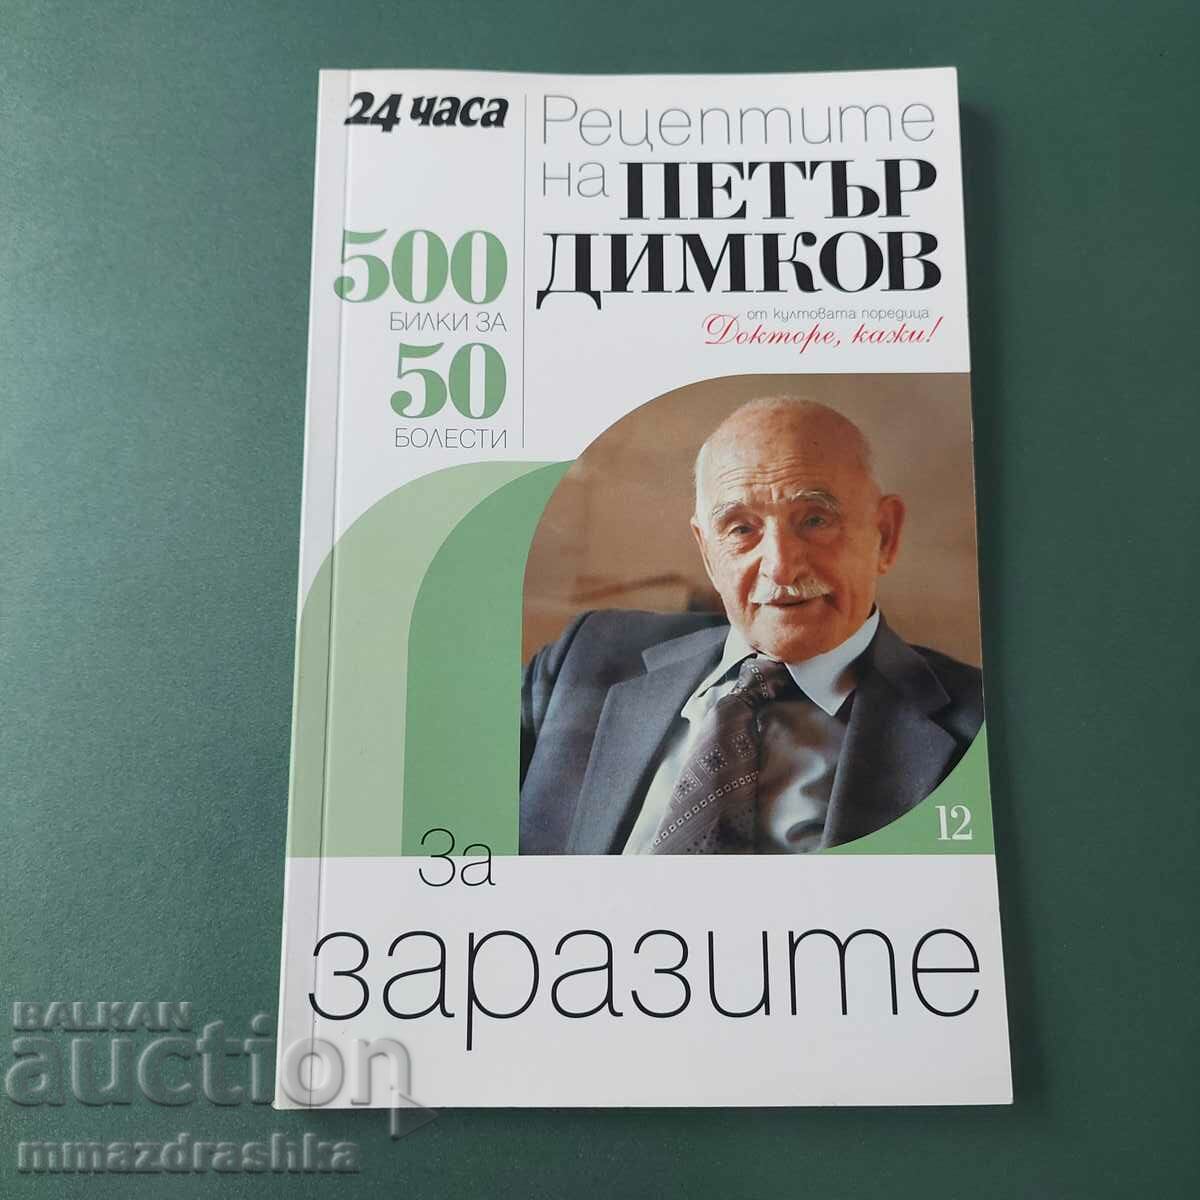 500 рецепти за запазите, Петър Димков